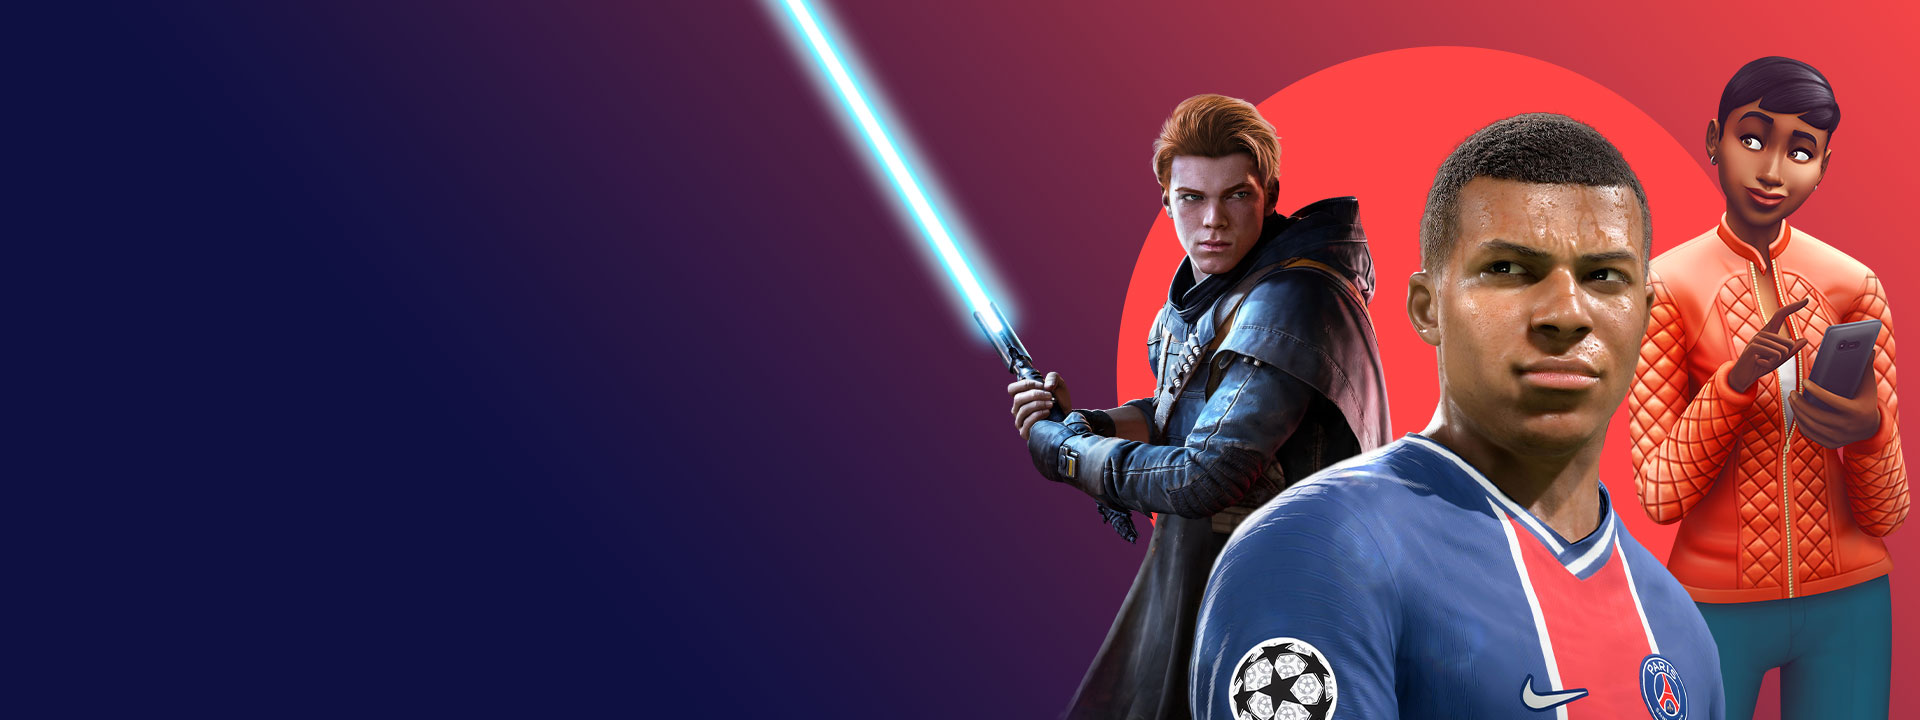 Images des jeux EA inclus dans le Xbox Game Pass, dont Star Wars Jedi: Fallen Order, FIFA 22 et The Sims 4.